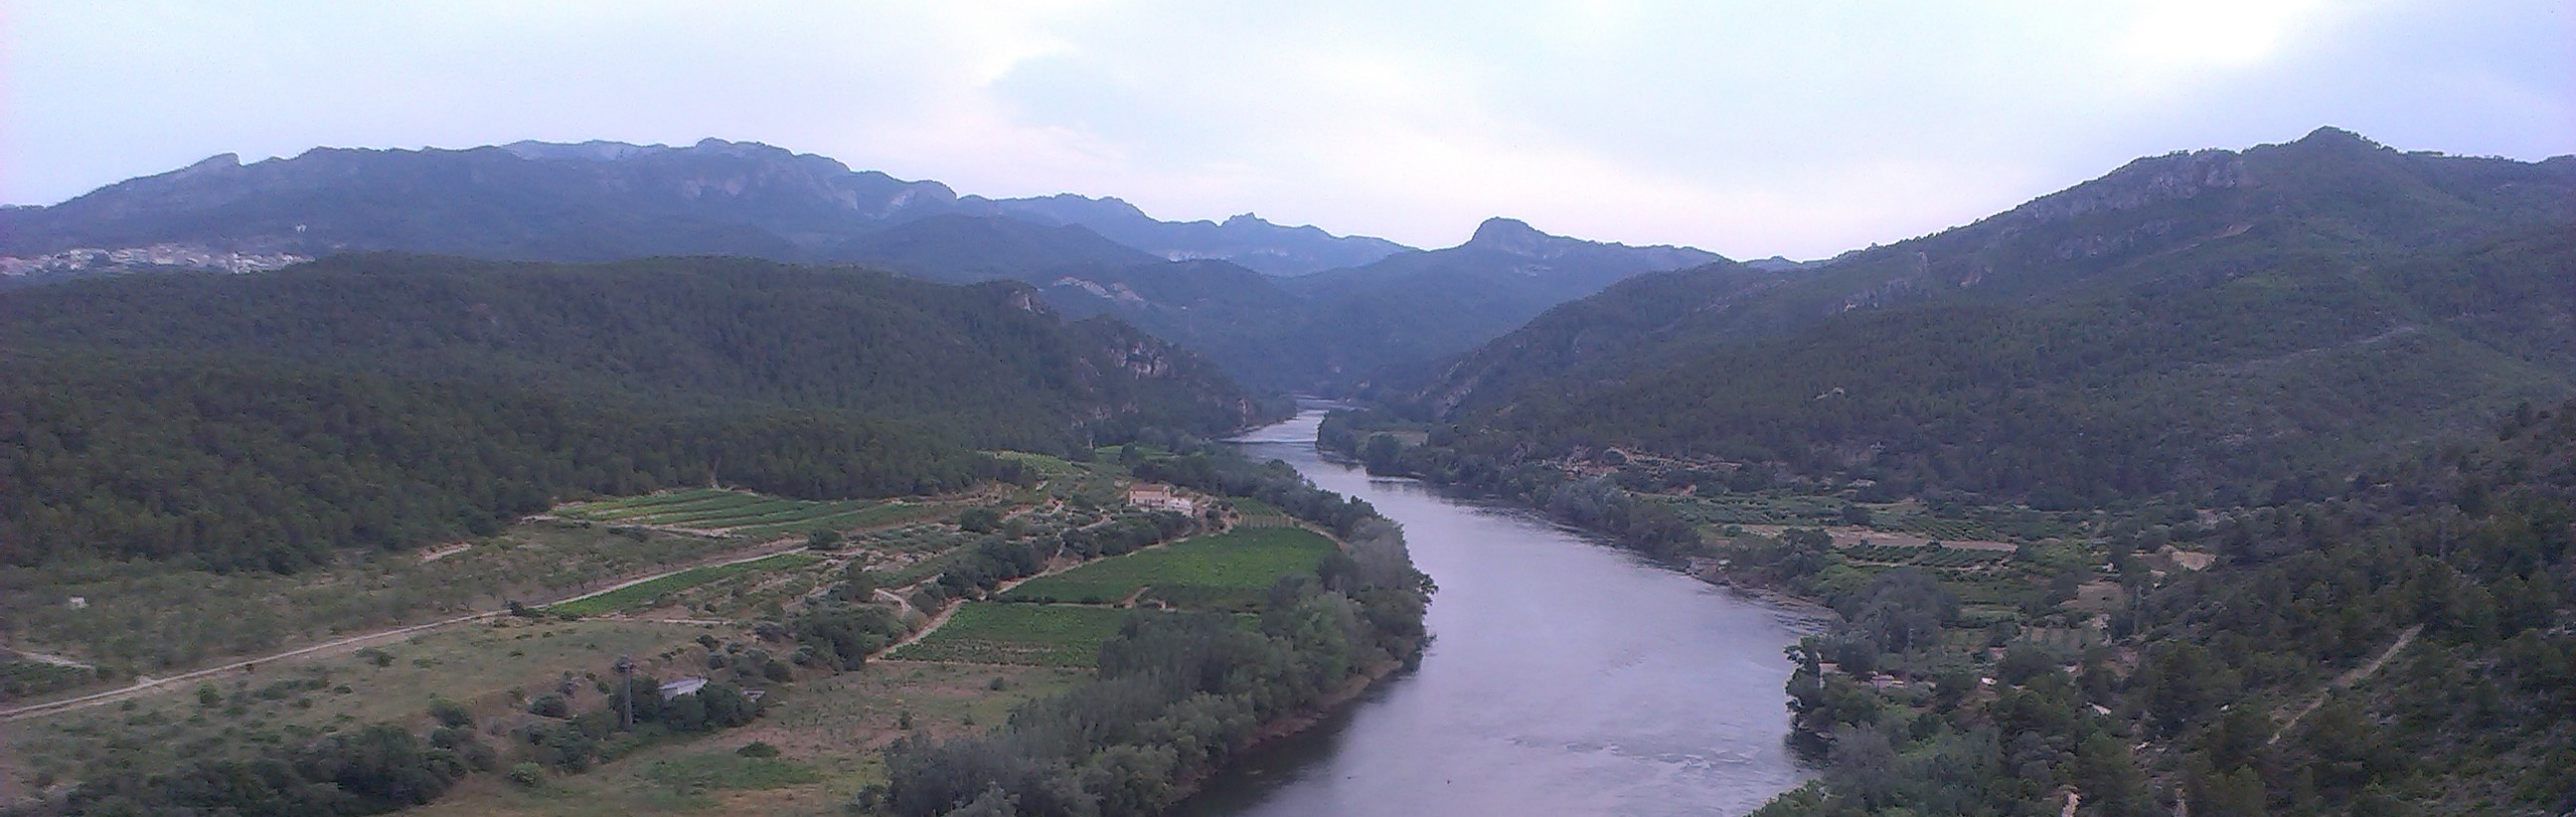 1997-2017: 20 años de datos del SAIHEbro, el Sistema Automático de Información Hidrológica de la Confederación Hidrográfica del Ebro